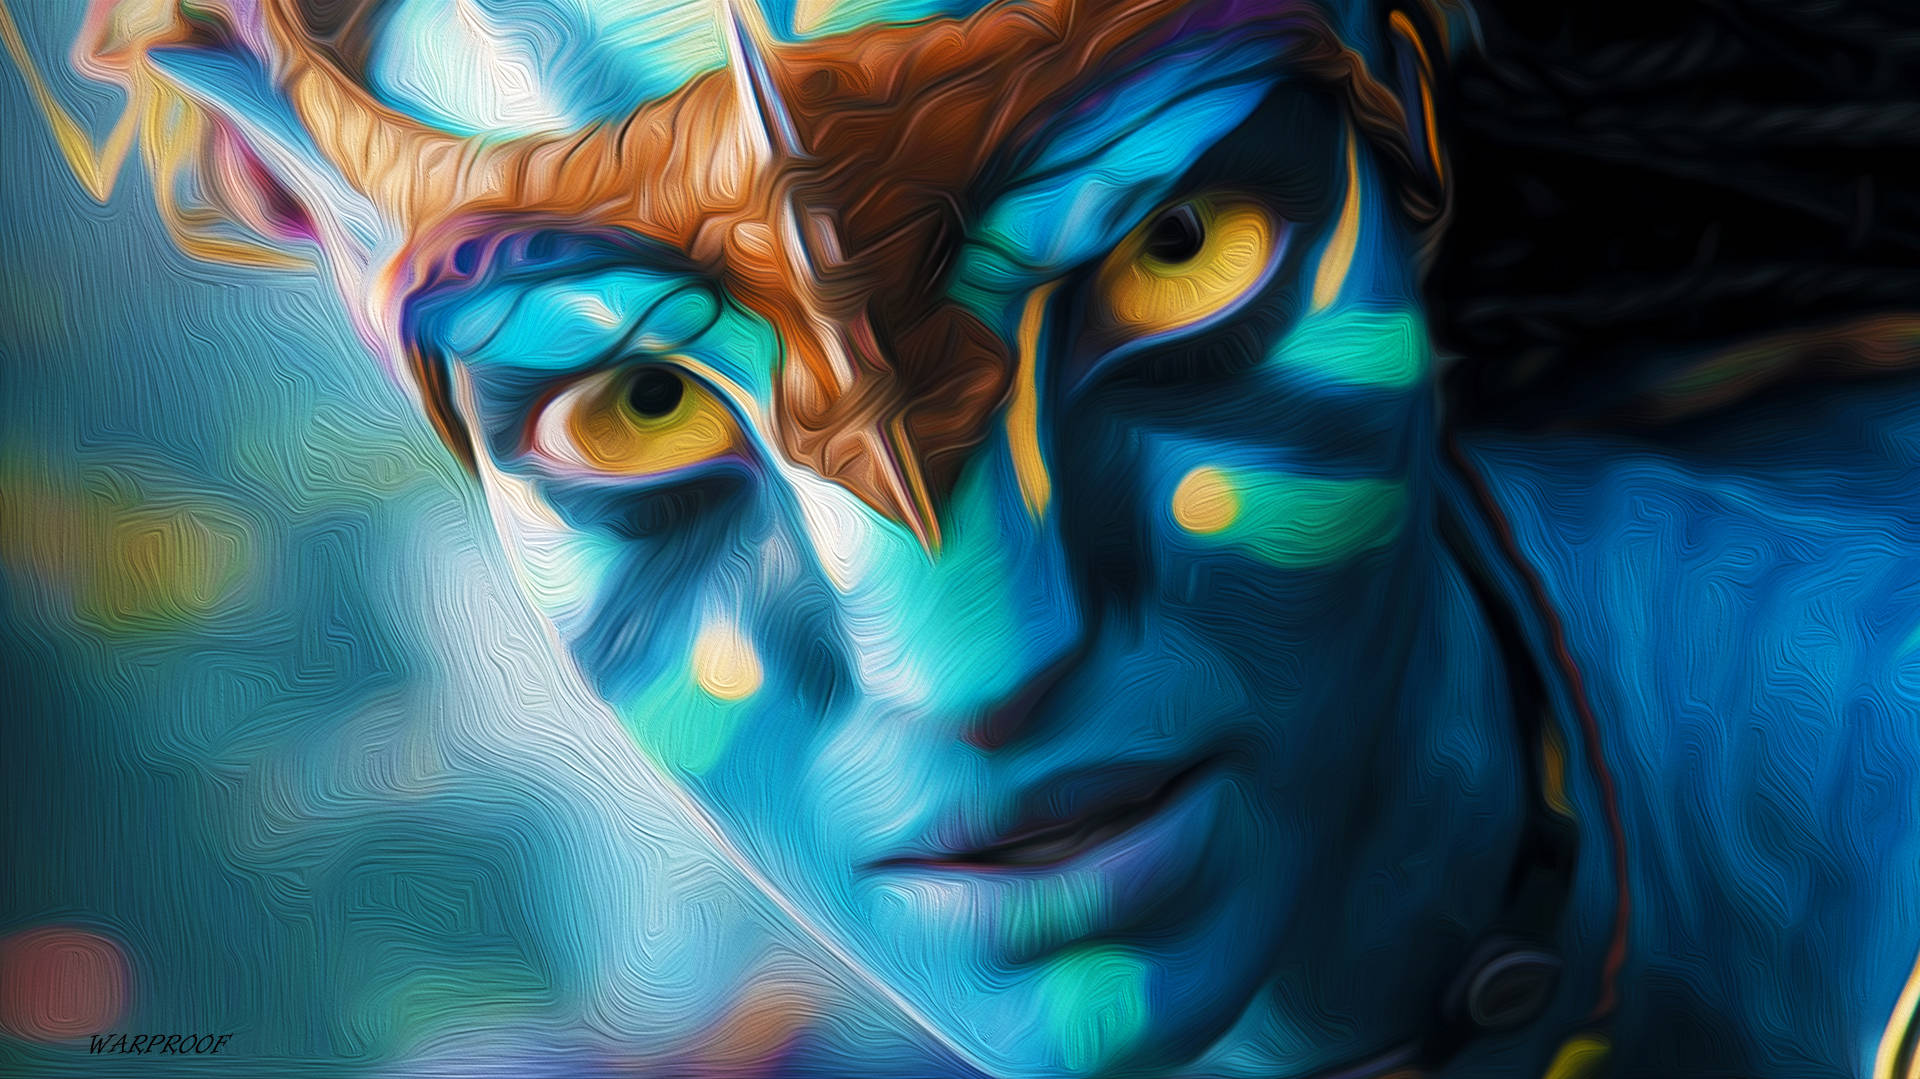 Avatar Neytiri Digital Art